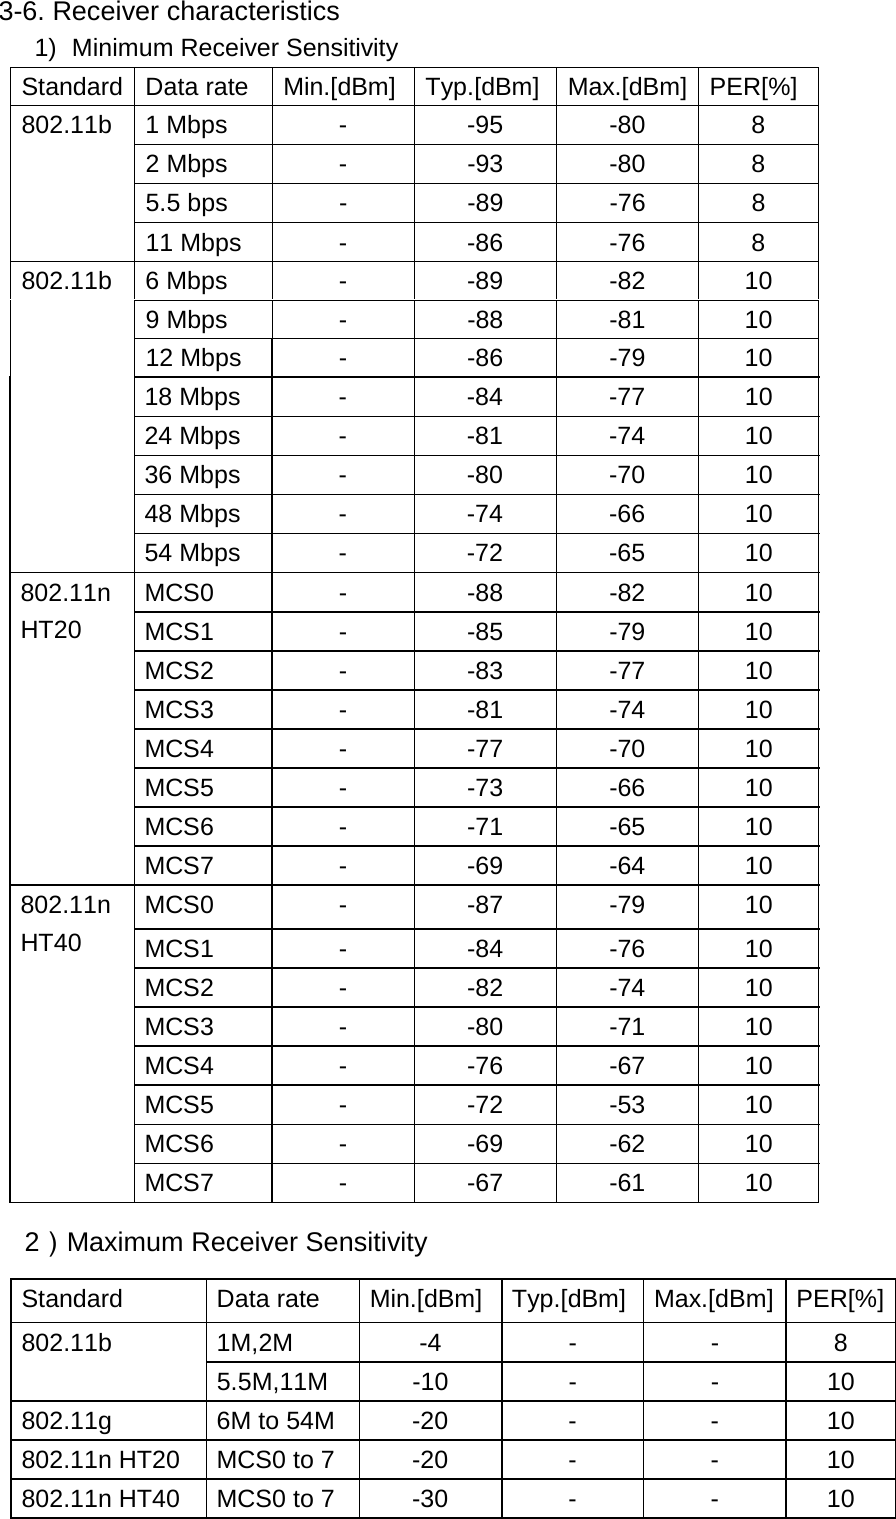  3-6. Receiver characteristics 1)  Minimum Receiver Sensitivity       Standard Data rate  Min.[dBm] Typ.[dBm] Max.[dBm] PER[%] 802.11b 1 Mbps  -  -95  -80  8 2 Mbps  -  -93  -80  8 5.5 bps  -  -89  -76  8 11 Mbps  -  -86  -76  8 802.11b 6 Mbps  -  -89  -82  10 9 Mbps  -  -88  -81  10 12 Mbps  -  -86  -79  10 18 Mbps  -  -84  -77  10 24 Mbps  -  -81  -74  10 36 Mbps  -  -80  -70  10 48 Mbps  -  -74  -66  10 54 Mbps  -  -72  -65  10 802.11n HT20 MCS0 - -88 -82 10 MCS1 - -85 -79 10 MCS2 - -83 -77 10 MCS3 - -81 -74 10 MCS4 - -77 -70 10 MCS5 - -73 -66 10 MCS6 - -71 -65 10 MCS7 - -69 -64 10 802.11n HT40 MCS0 - -87 -79 10 MCS1 - -84 -76 10 MCS2 - -82 -74 10 MCS3 - -80 -71 10 MCS4 - -76 -67 10 MCS5 - -72 -53 10 MCS6 - -69 -62 10 MCS7 - -67 -61 10    2）Maximum Receiver Sensitivity Standard Data rate Min.[dBm] Typ.[dBm] Max.[dBm] PER[%]802.11b 1M,2M  -4  -  -  8 5.5M,11M -10  -  -  10 802.11g  6M to 54M  -20  -  -  10 802.11n HT20  MCS0 to 7  -20  -  -  10 802.11n HT40  MCS0 to 7  -30  -  -  10    